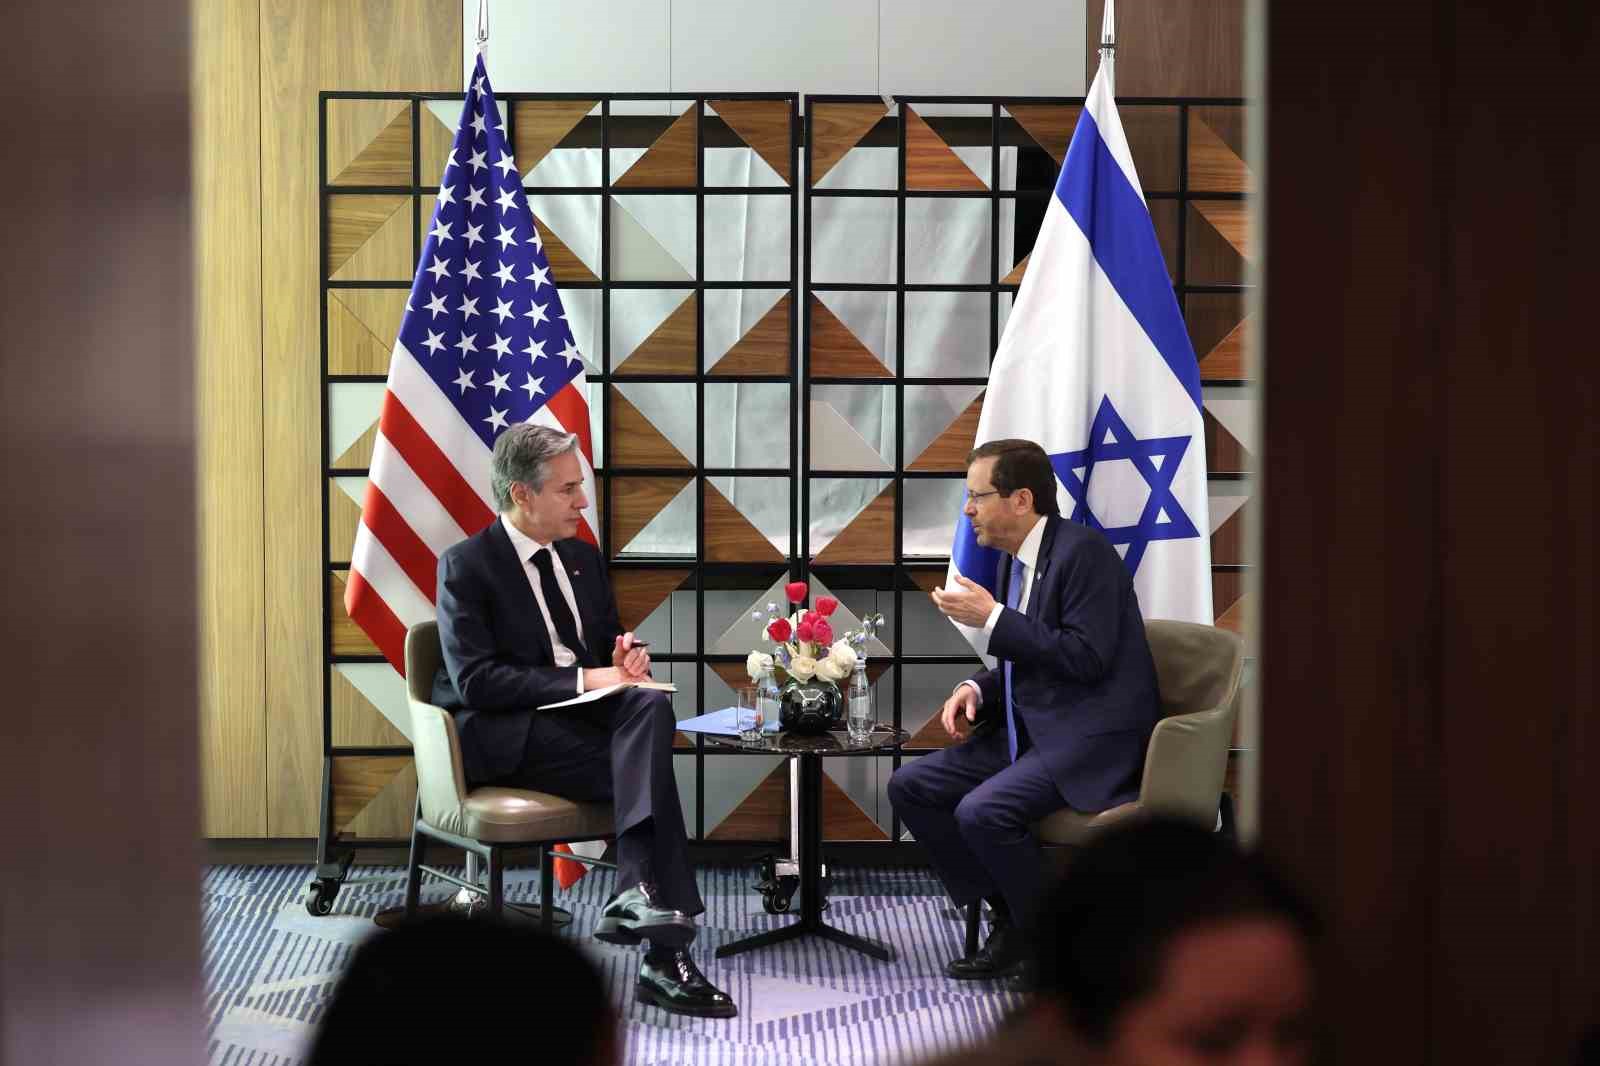 Herzog: “Desteğiniz, İsrail’in güvenliğine olan kararlı bağlılığınız ve İsrail’in bu savaşı kazanmasını sağladığınız için size minnettarız”